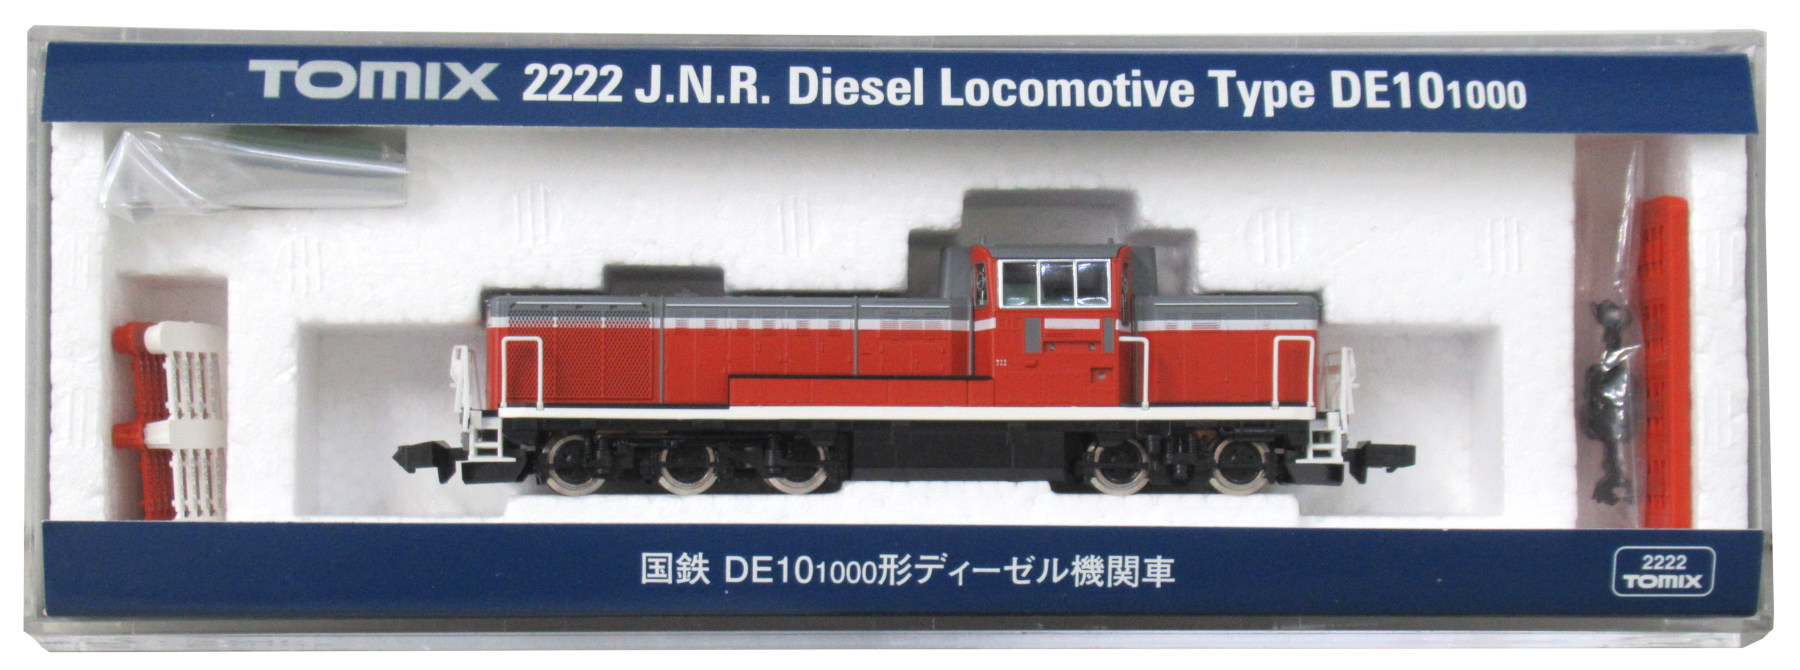 2222 国鉄 DE10-1000形ディーゼル機関車